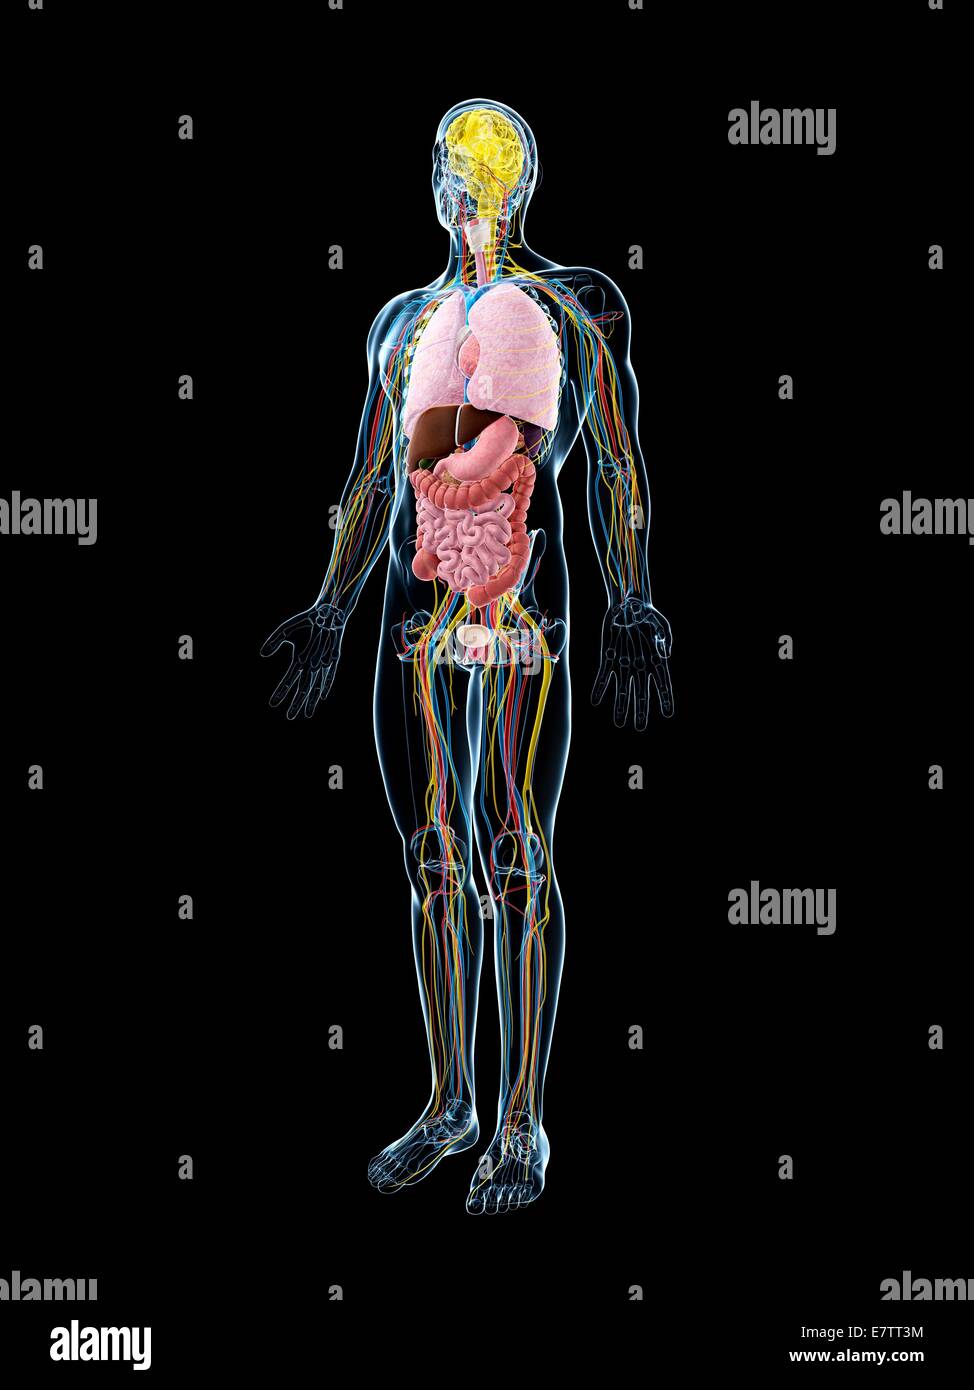 Menschliche Anatomie, Computer-Grafik. Stockfoto